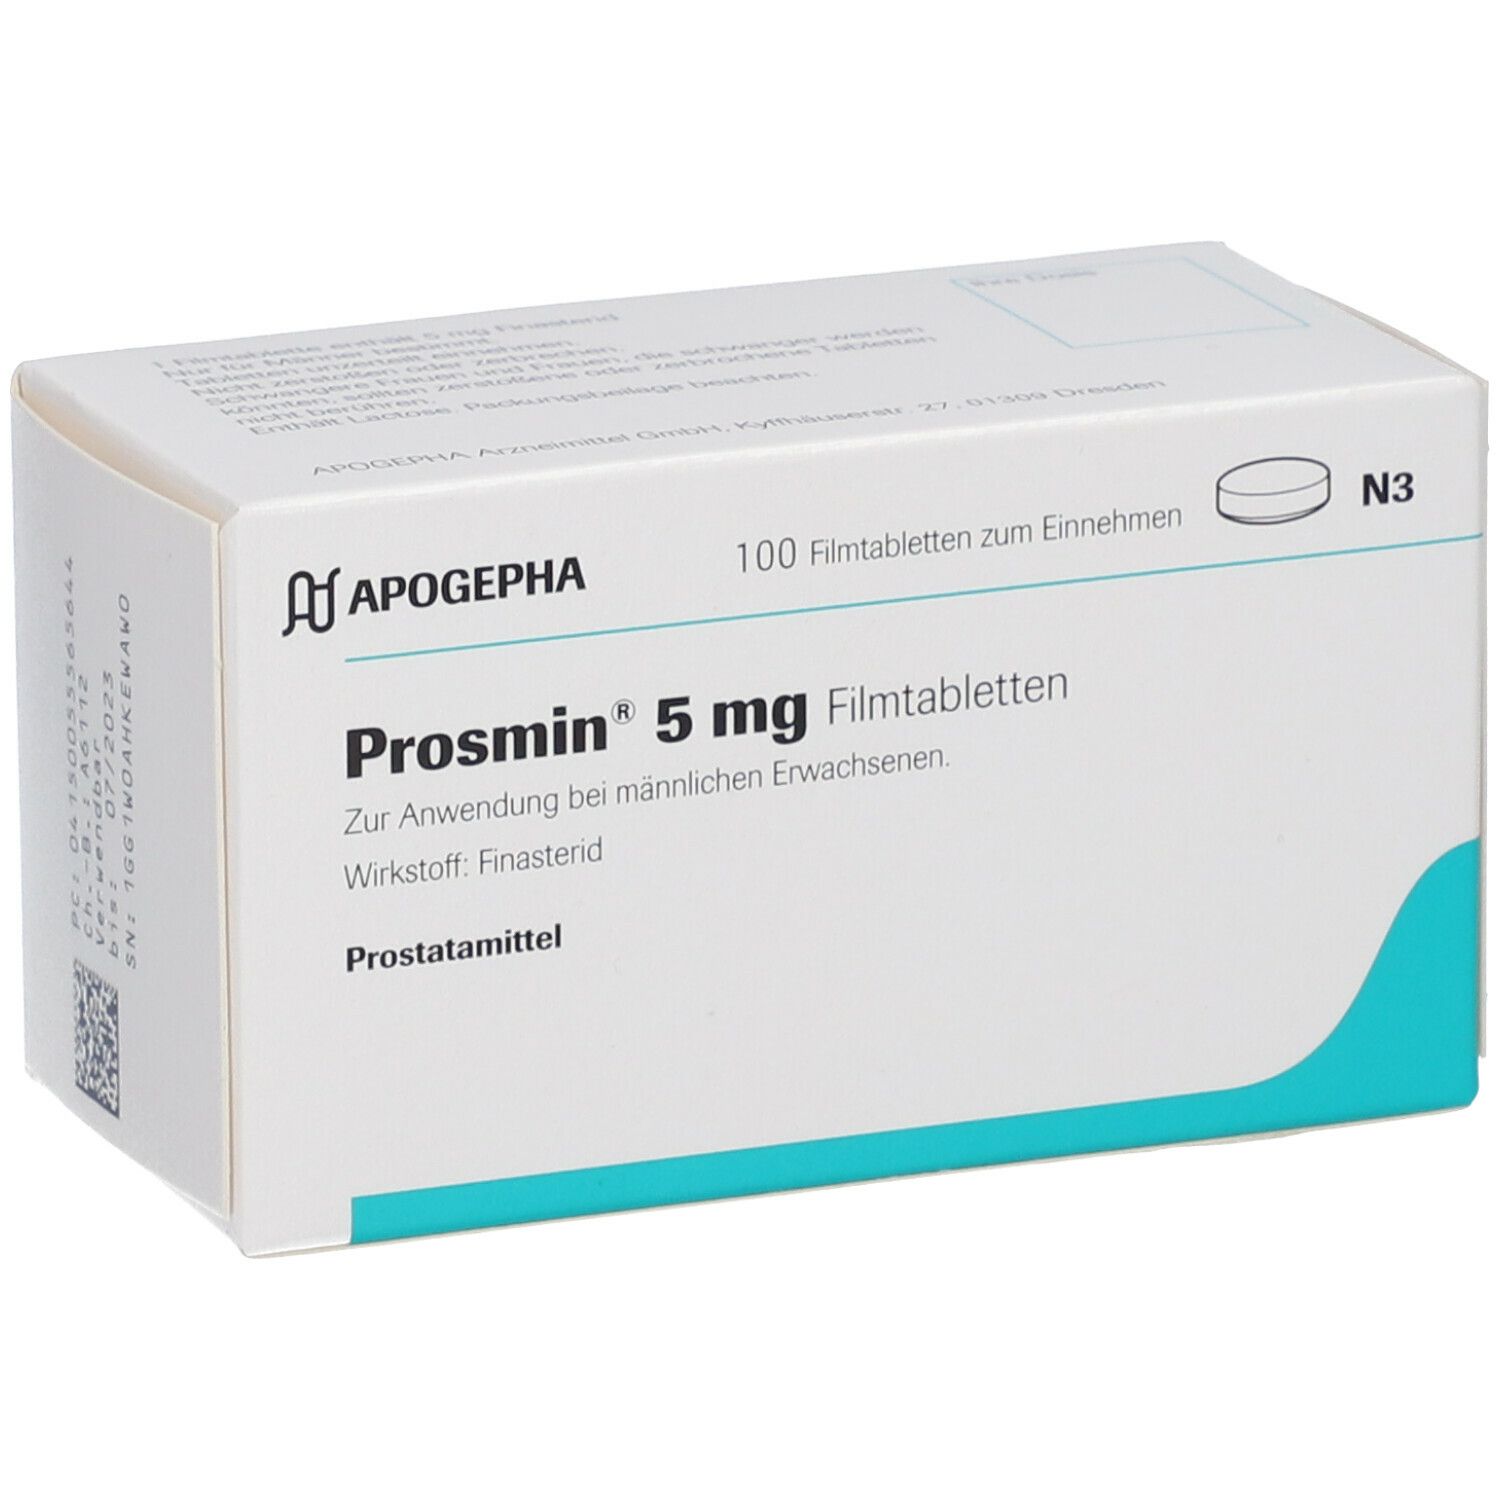 Prosmin® 5 mg